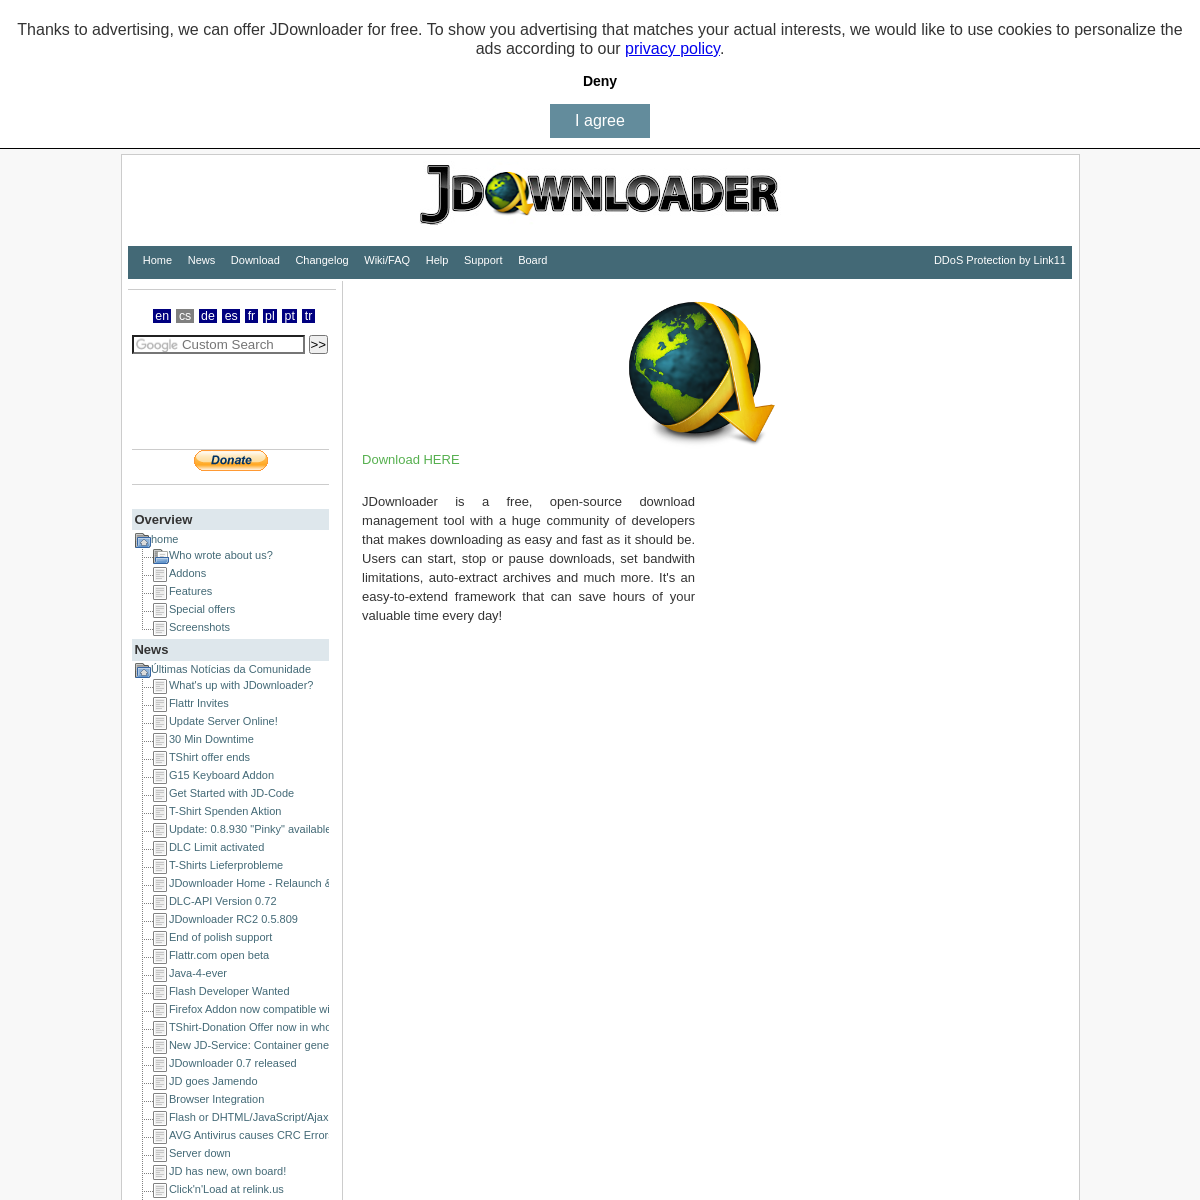 A complete backup of jdownloader.org